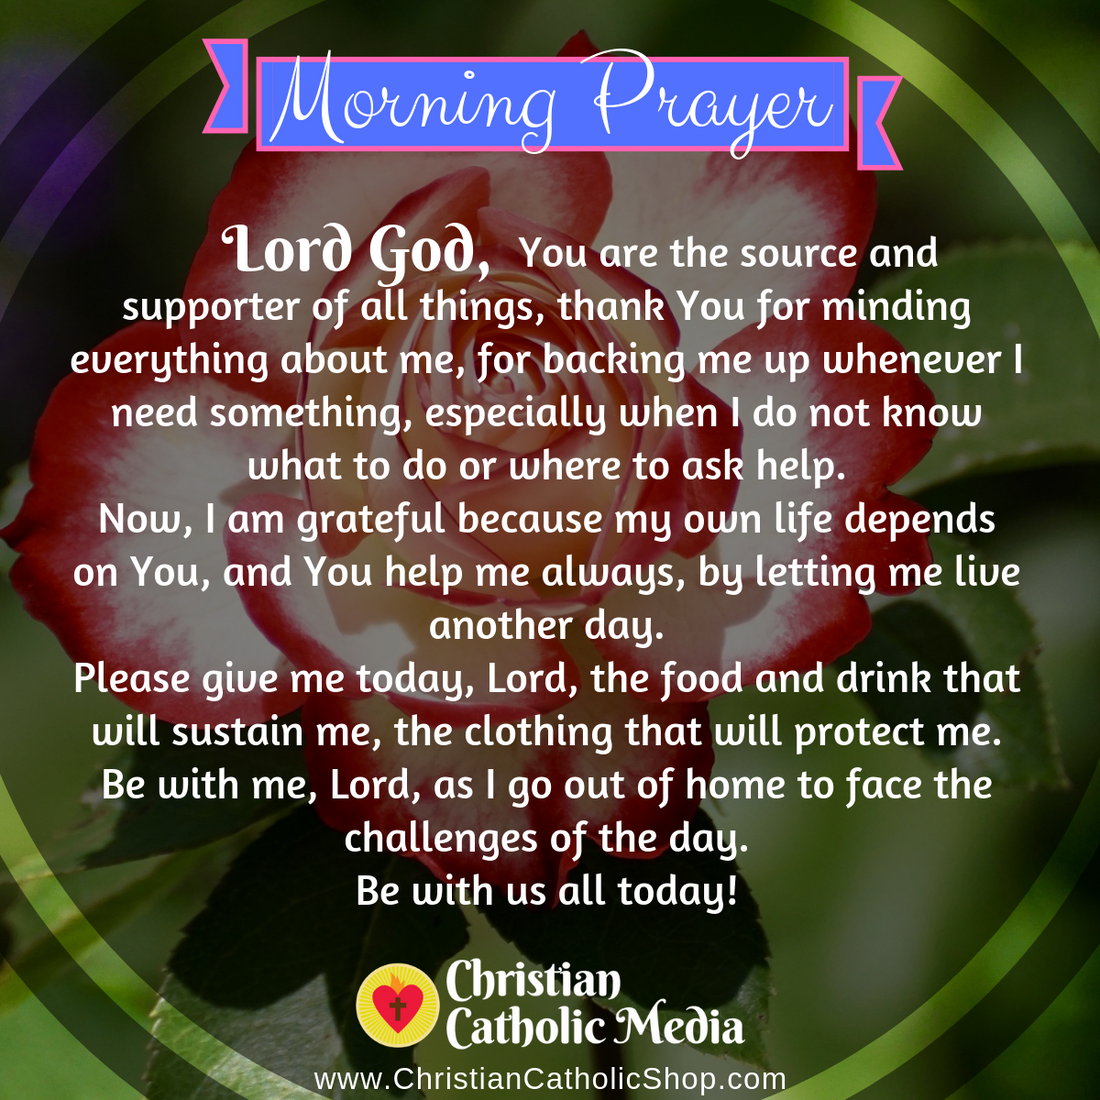 Morning Prayer Catholic Tuesday 4-14-2020